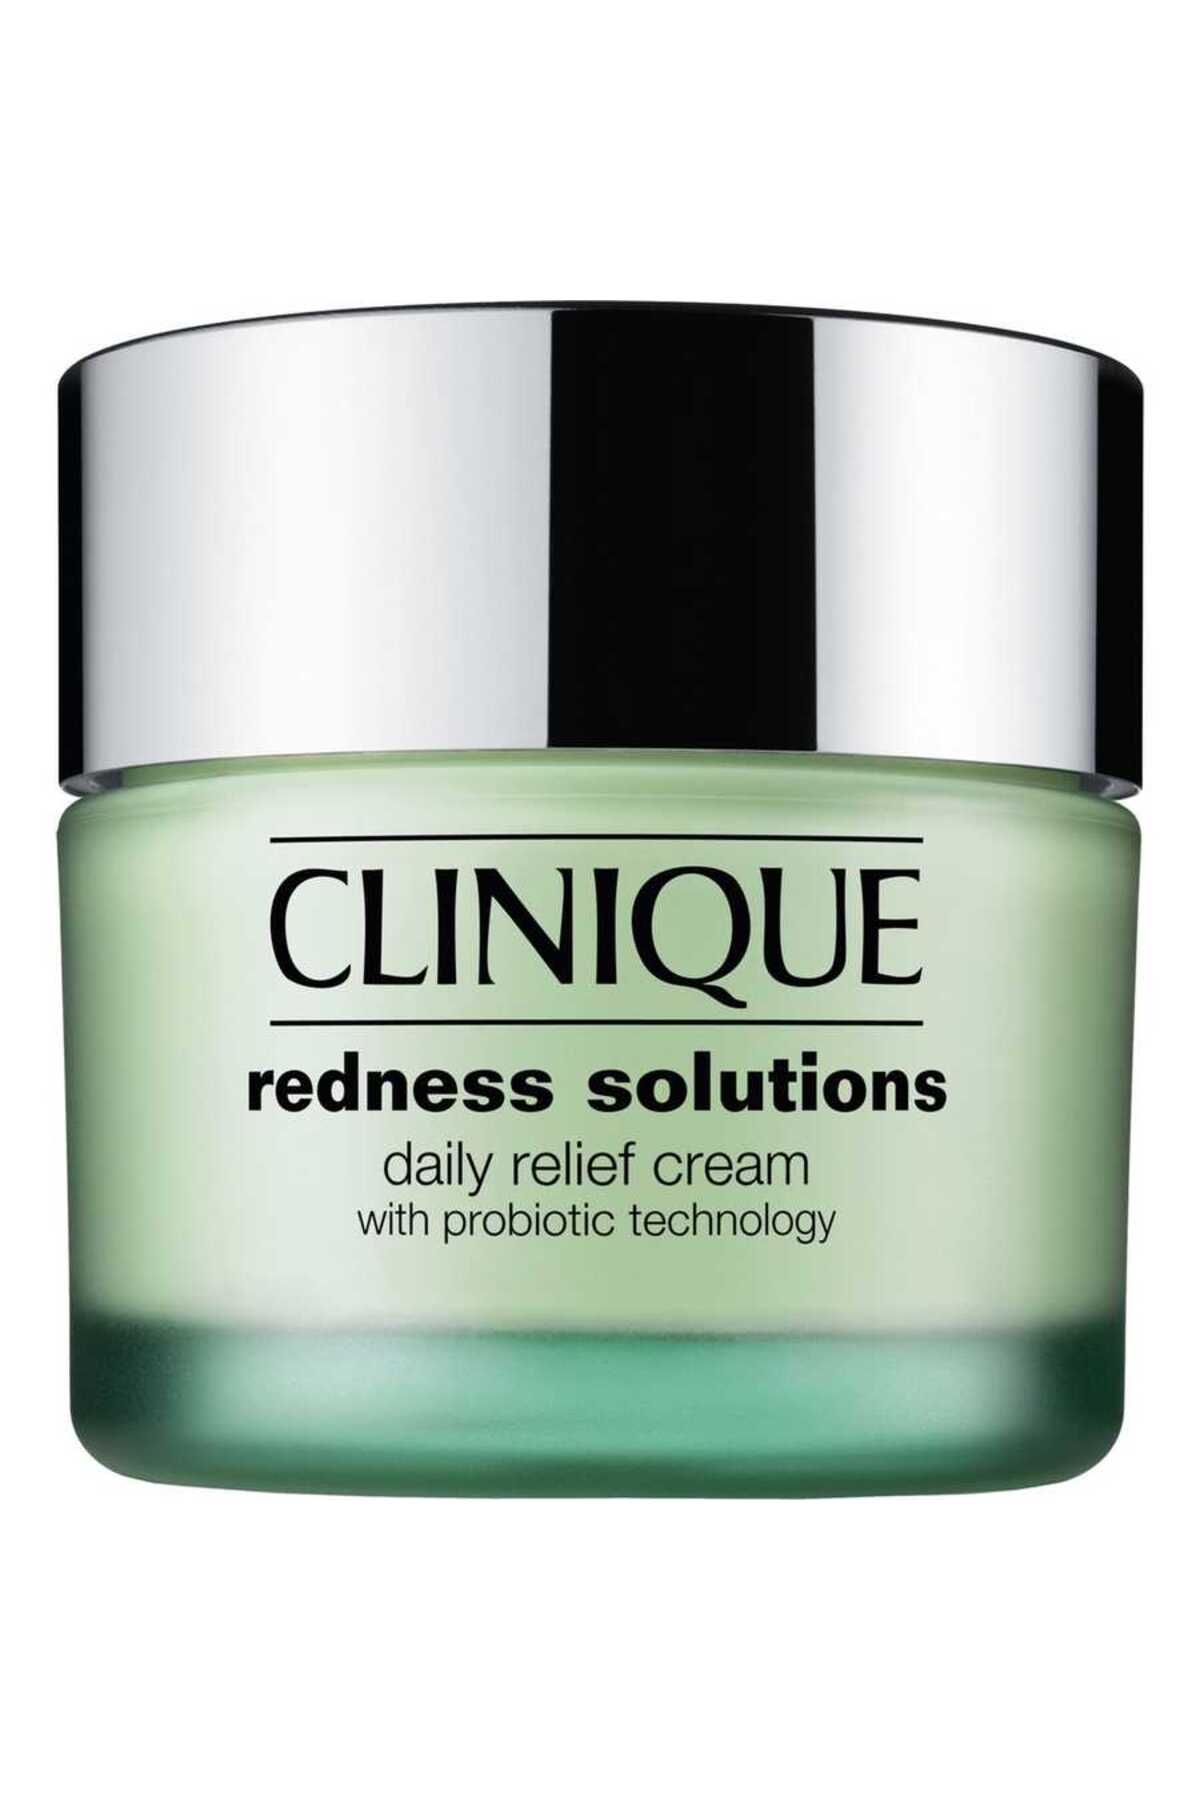 Clinique Rednes Solutions Daily Cream- Kızarık Ciltler Için Günlük Krem 50 ml